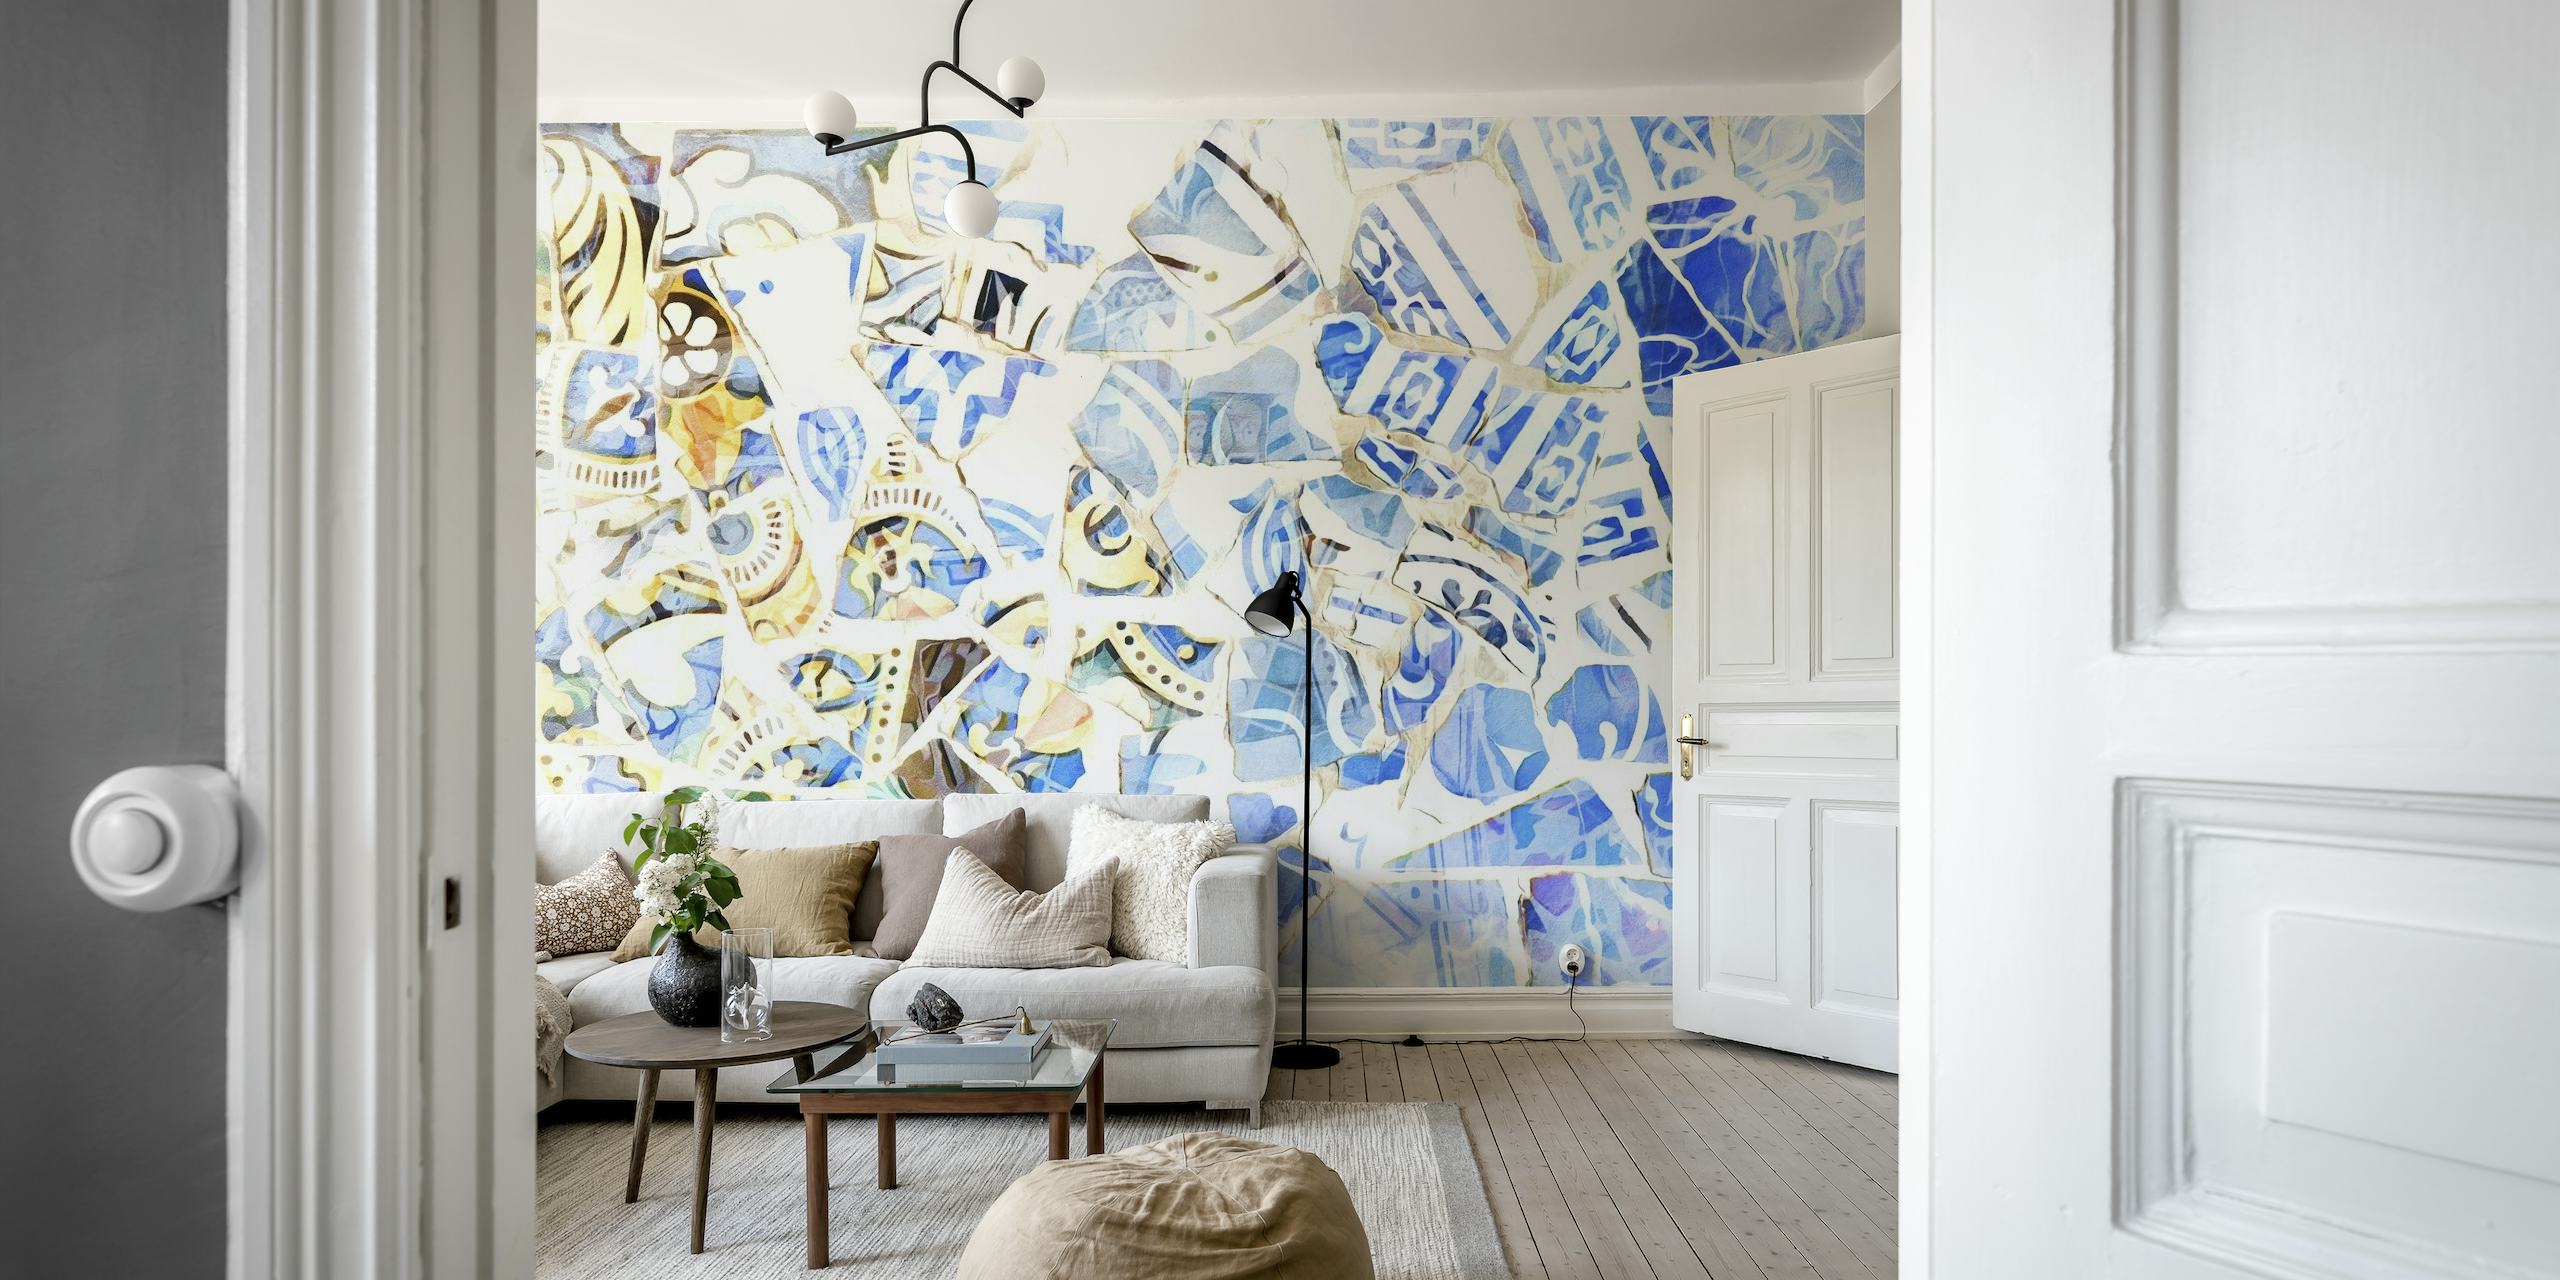 Abstraktes Mosaik-Wandbild in Blau- und Weißtönen, inspiriert von der Kunst Barcelonas